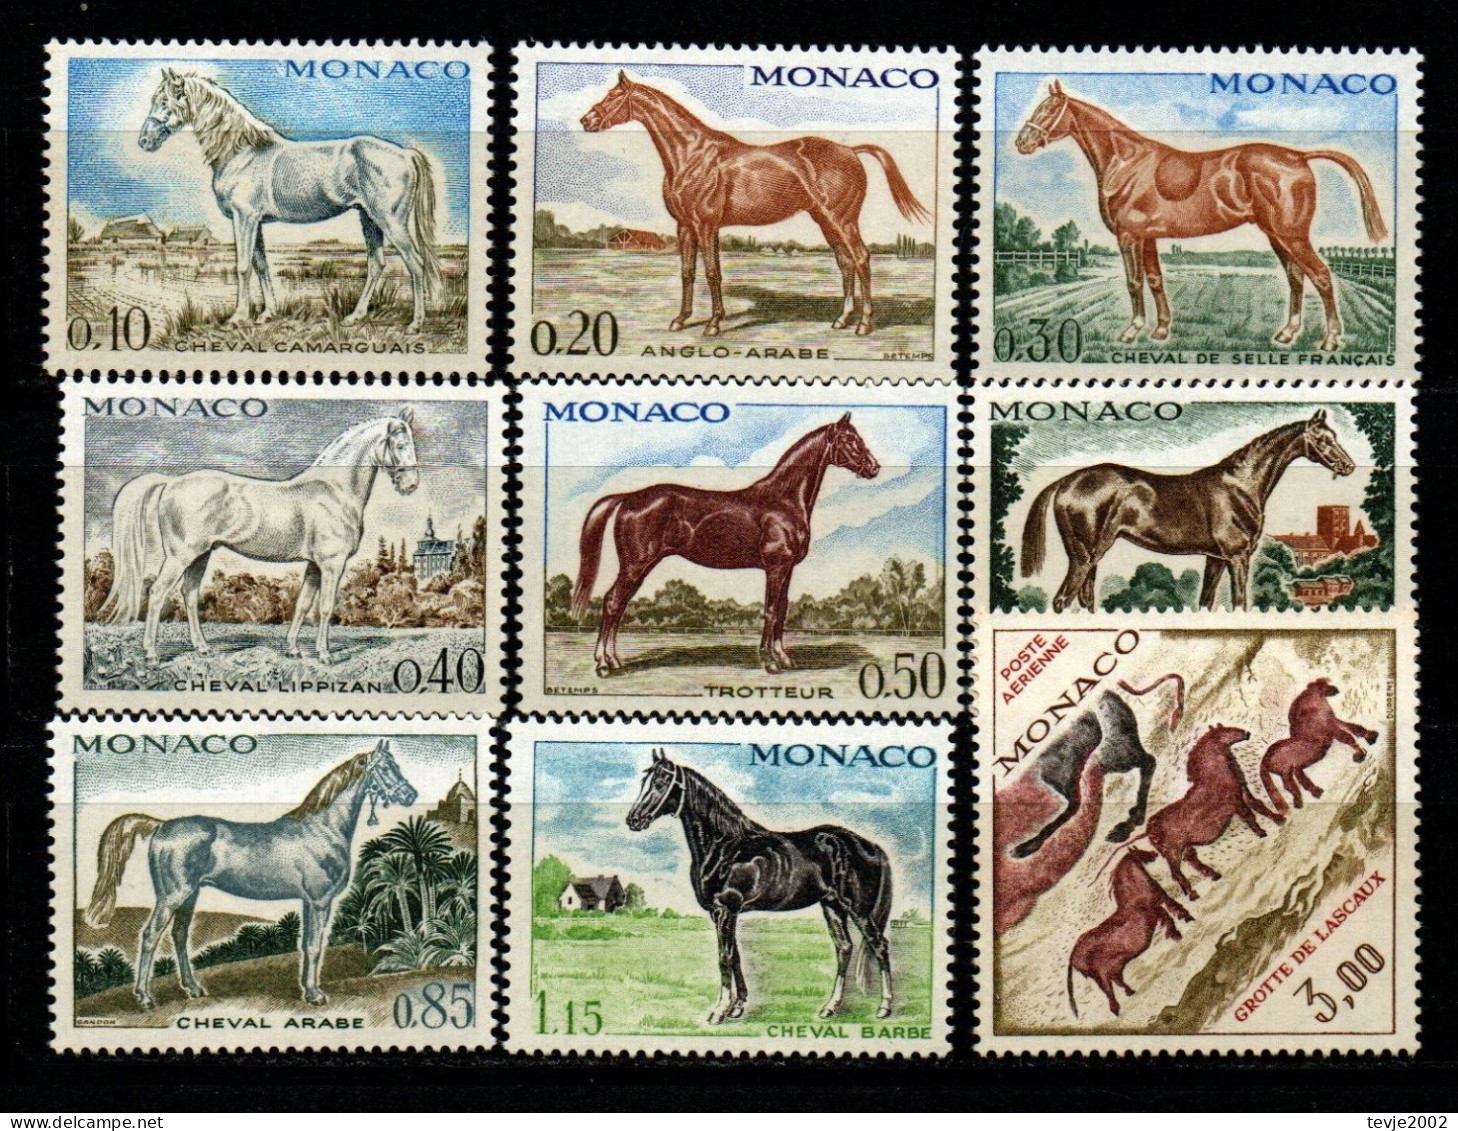 Monaco 1970 - Mi.Nr. 980 - 988 - Postfrisch MNH - Tiere Animals Pferde Horses - Chevaux